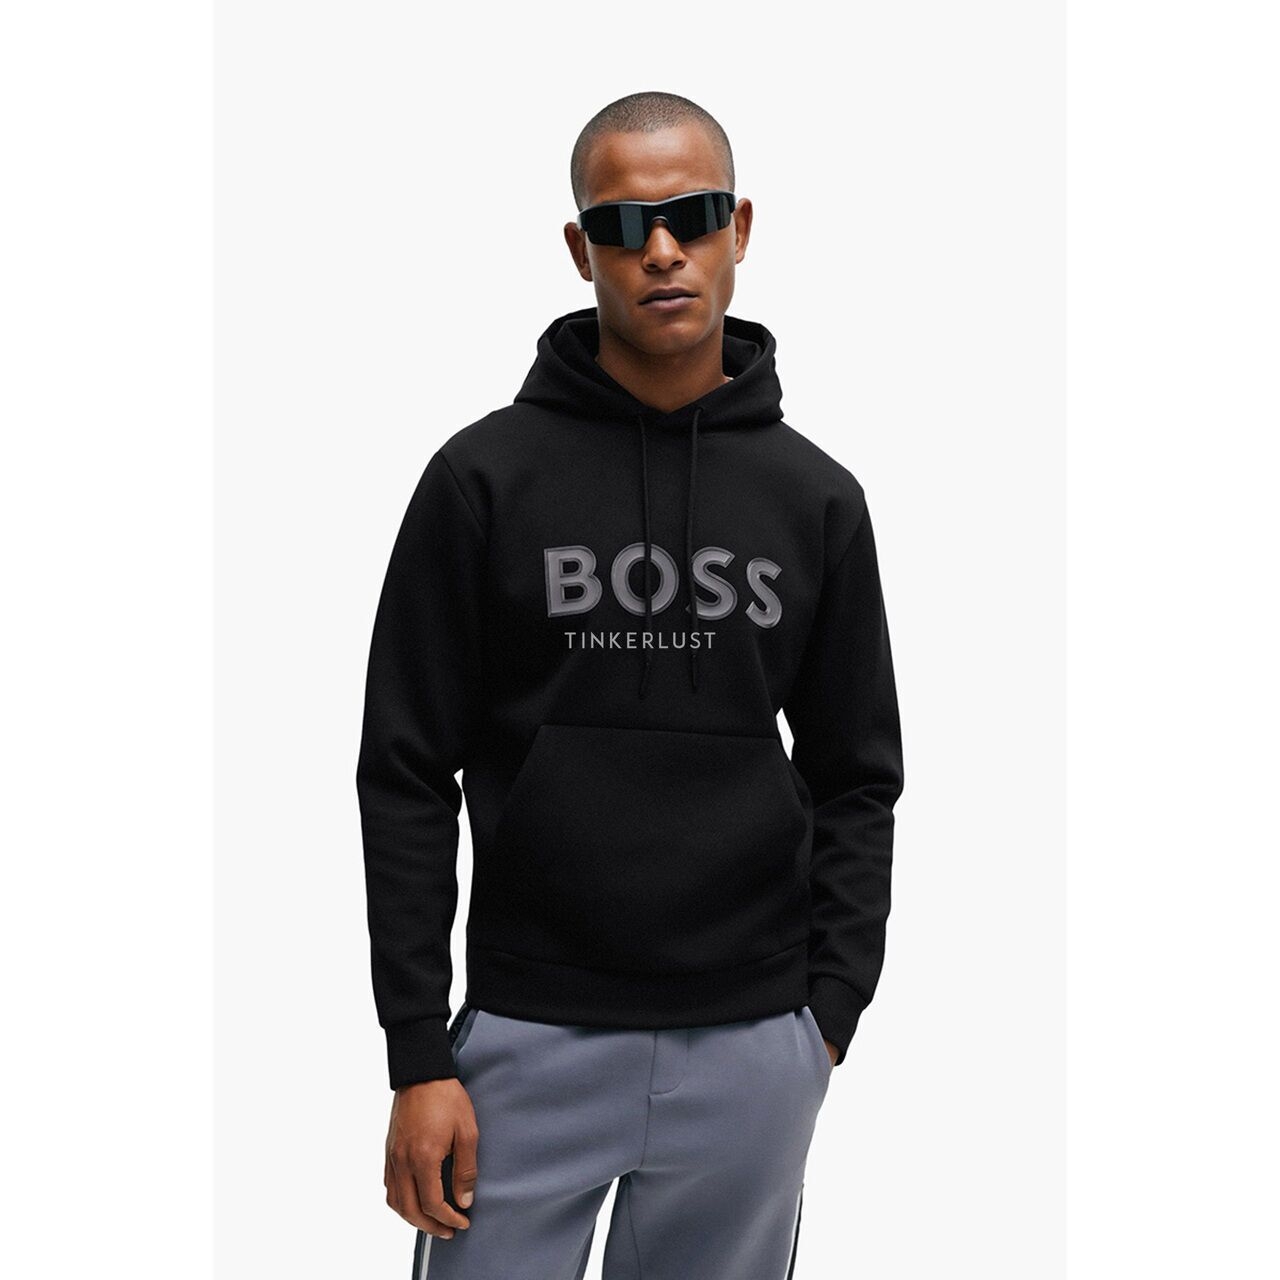 Hugo Boss Men Soody 1 Sweatshirt in Black with Hoodie